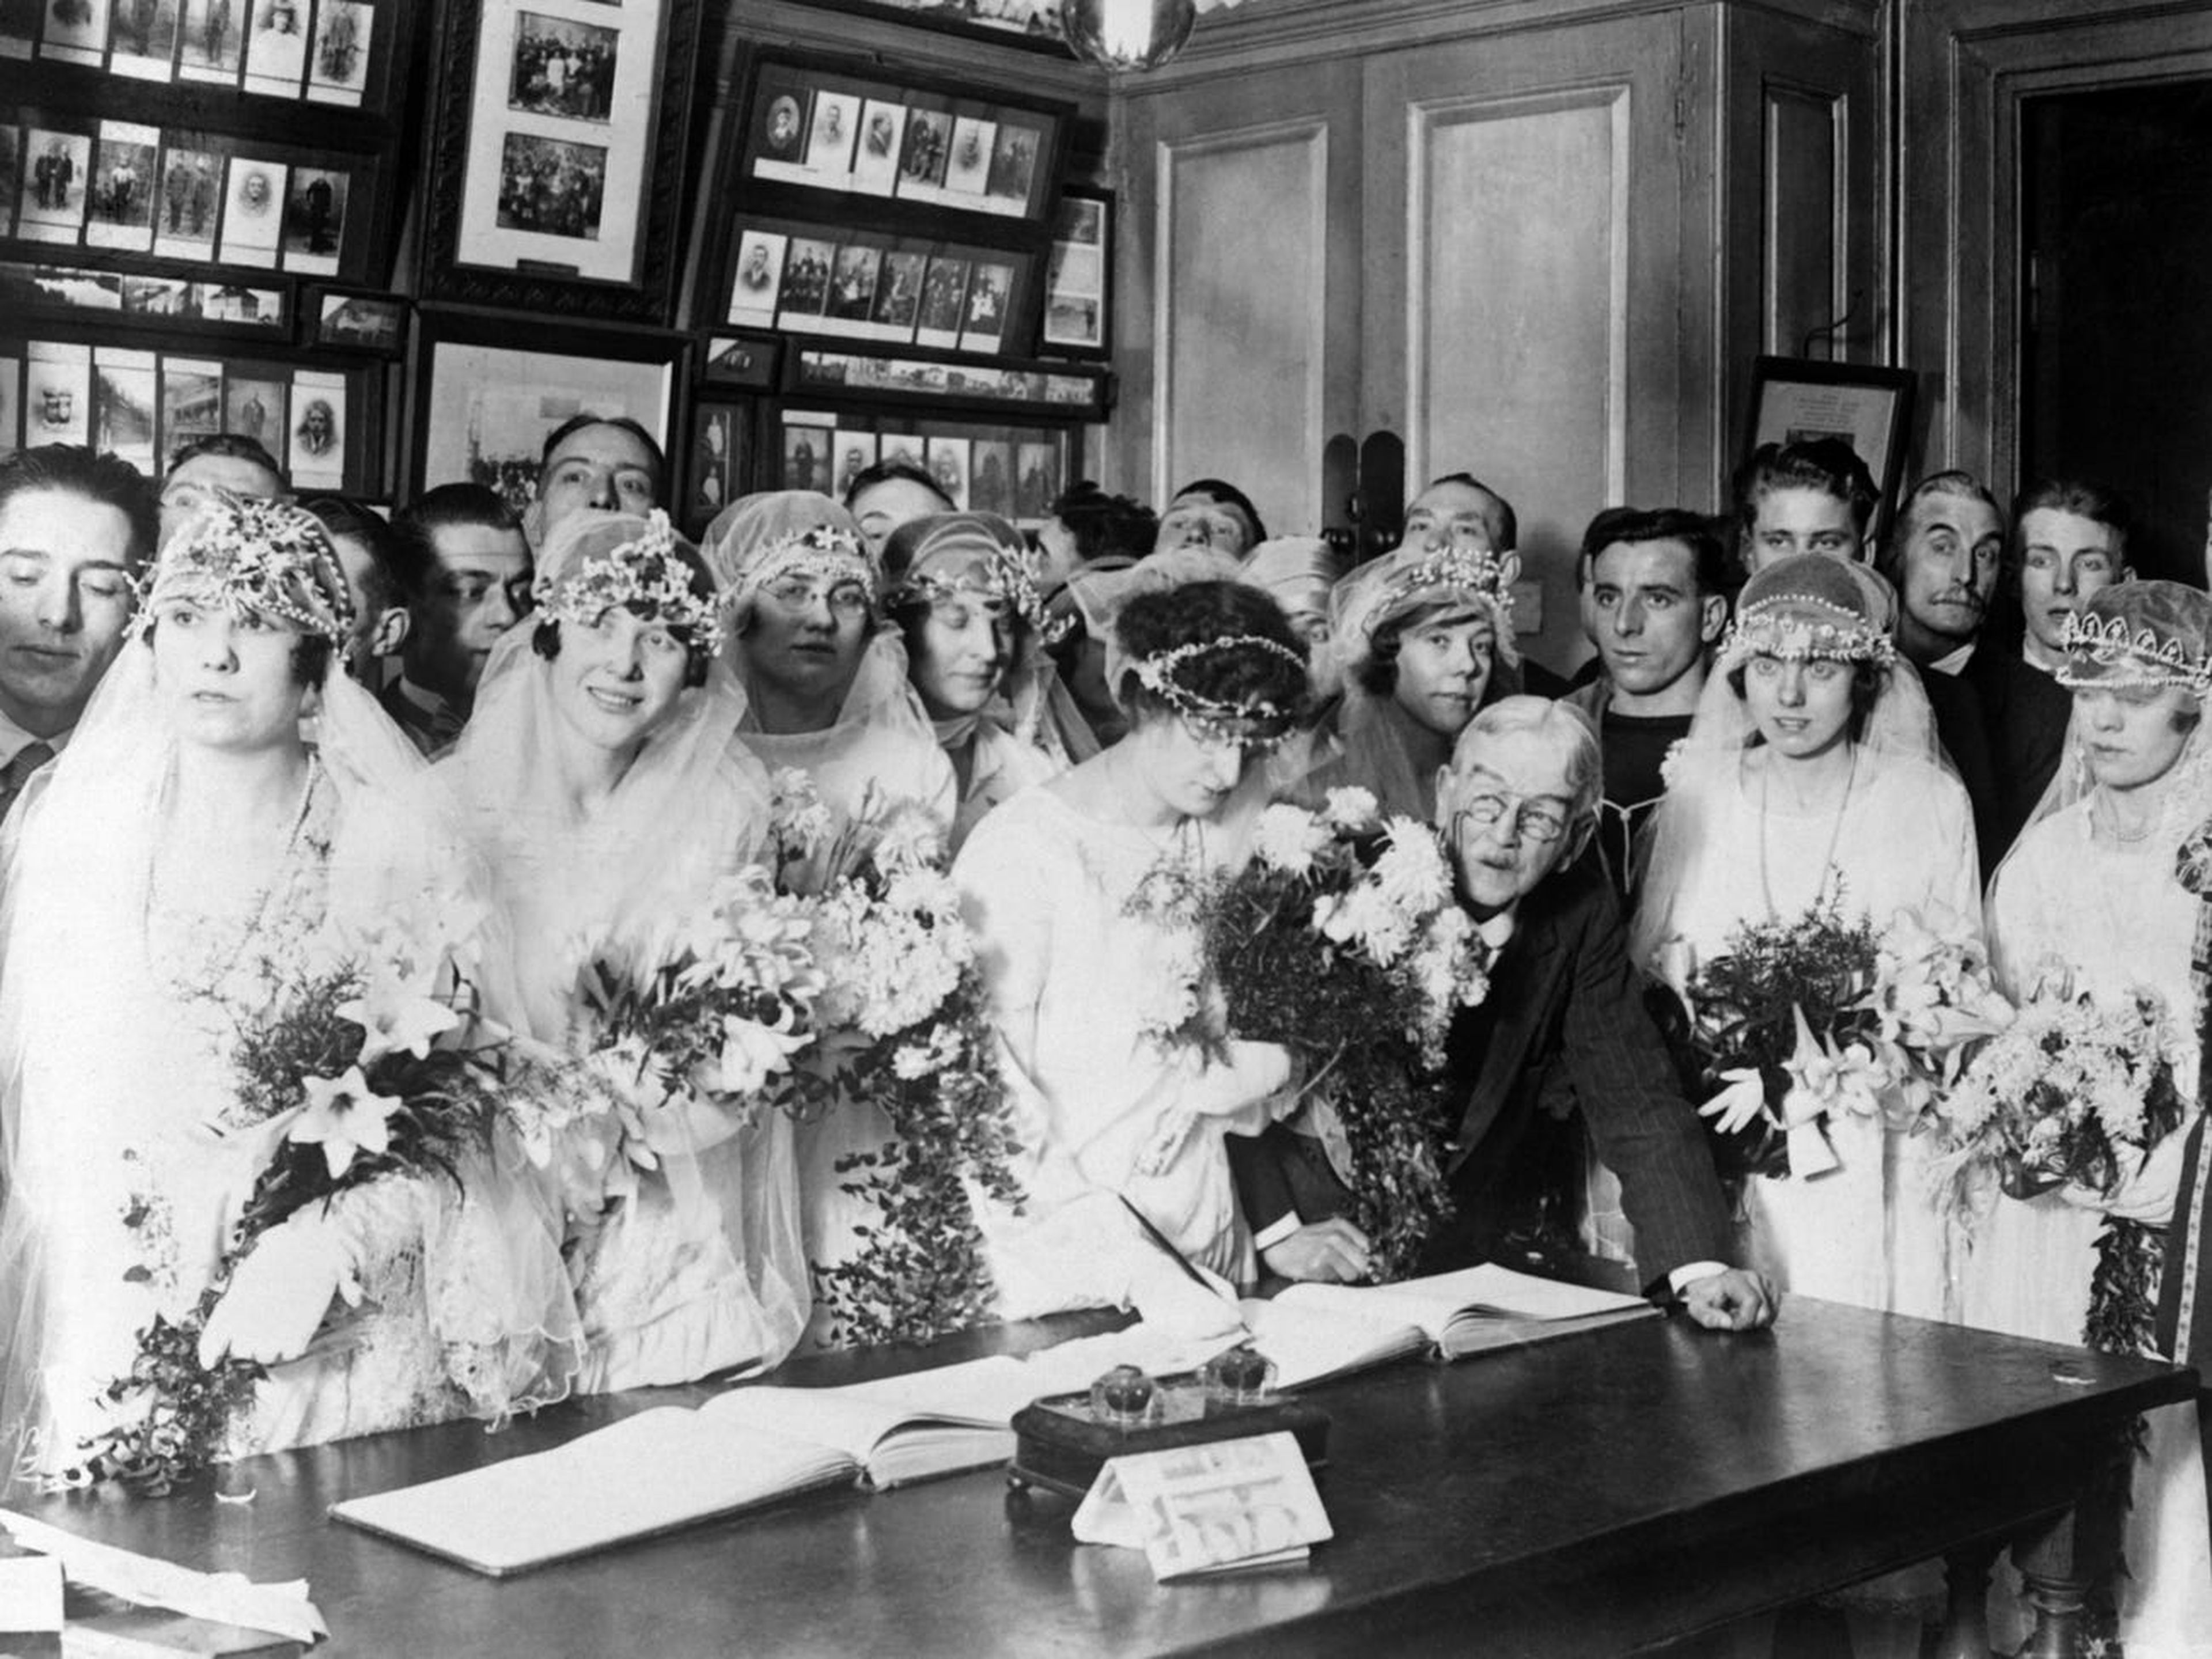 Las parejas se reunieron en la Iglesia de San Jorge el día de Navidad en 1920.